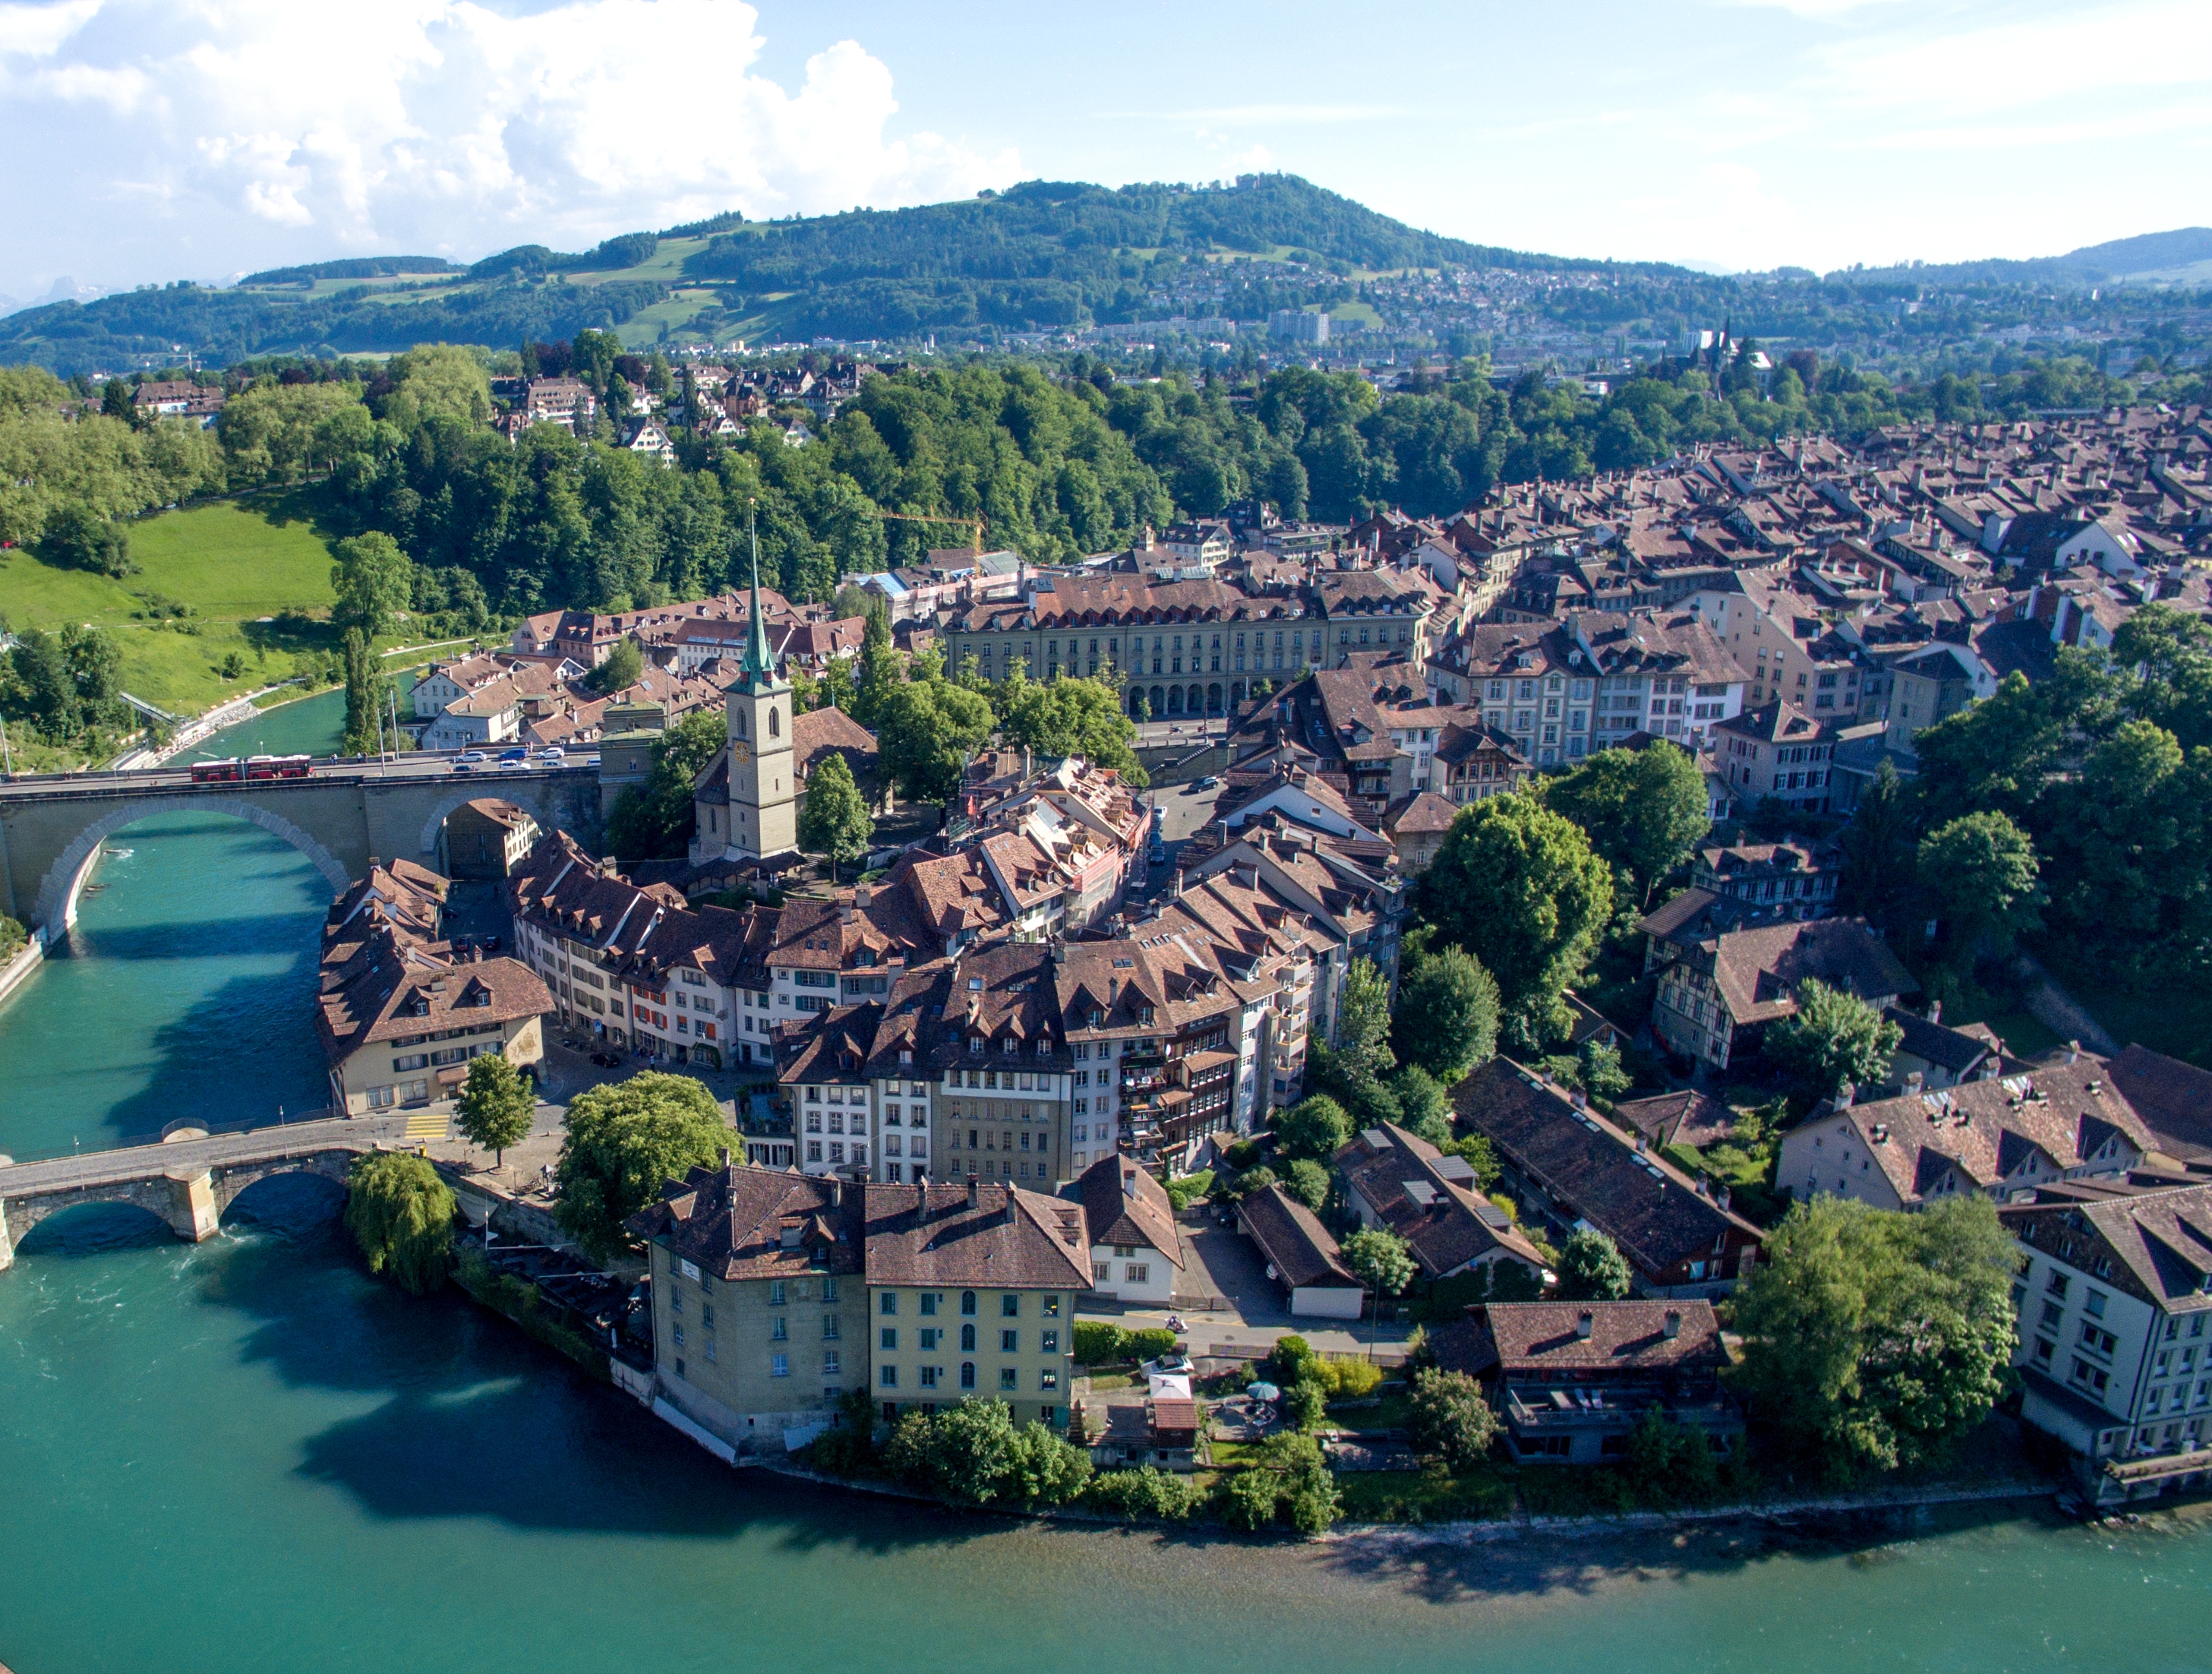 Capital Of Switzerland